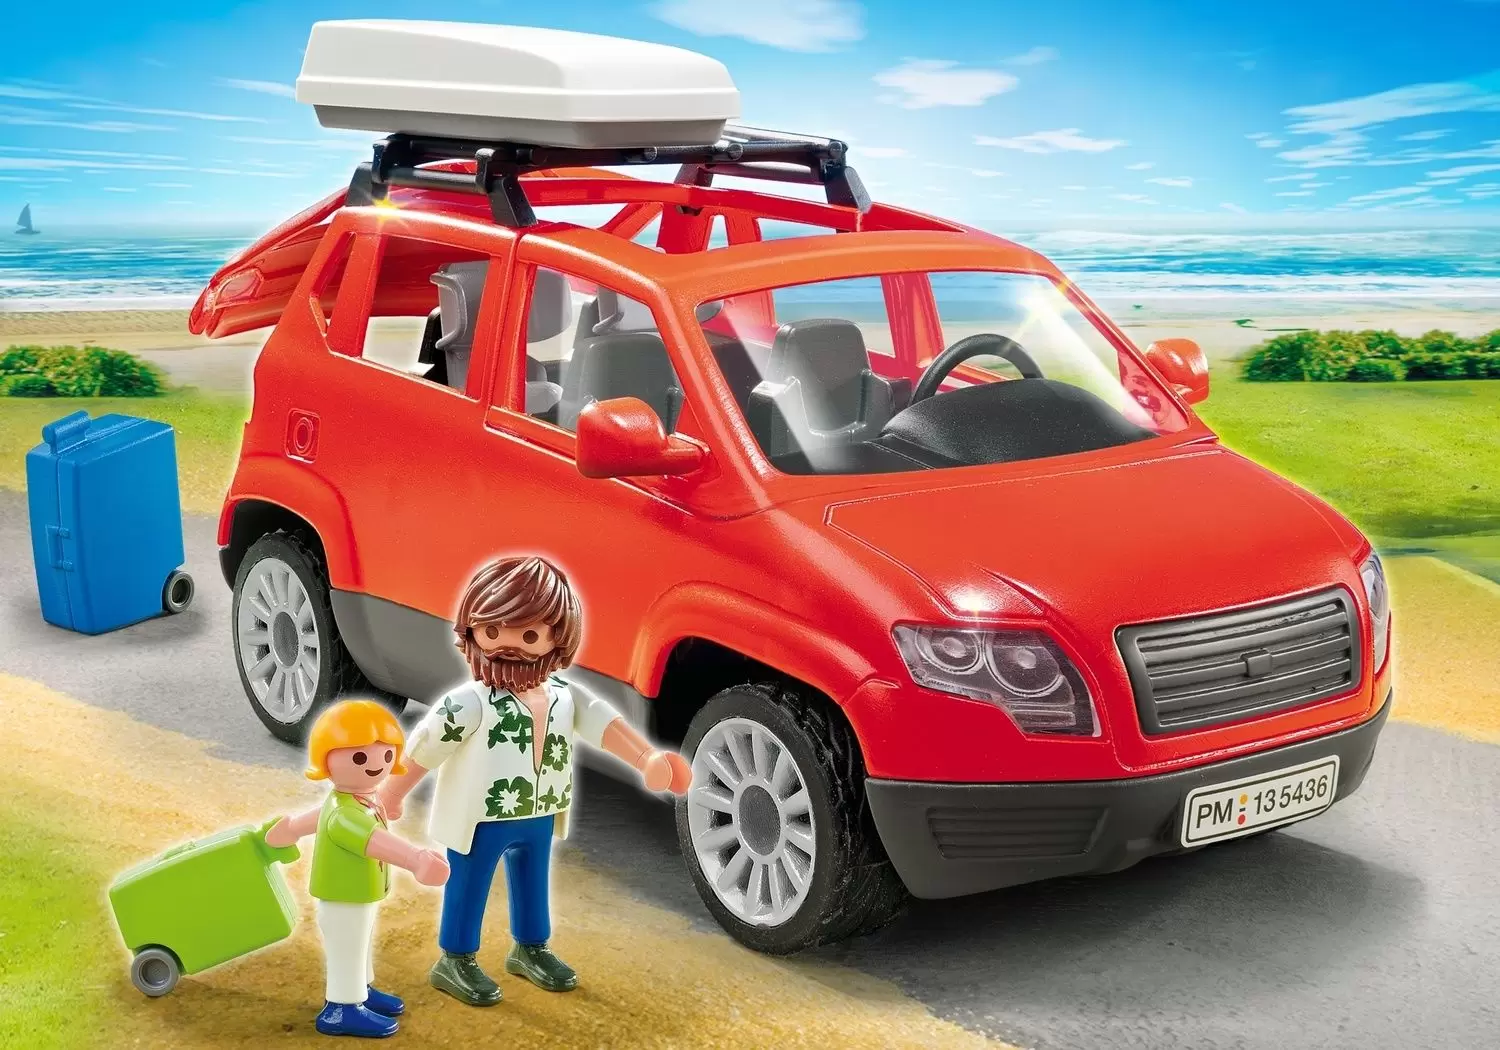 Playmobil en vacances - Voiture avec coffre de toit